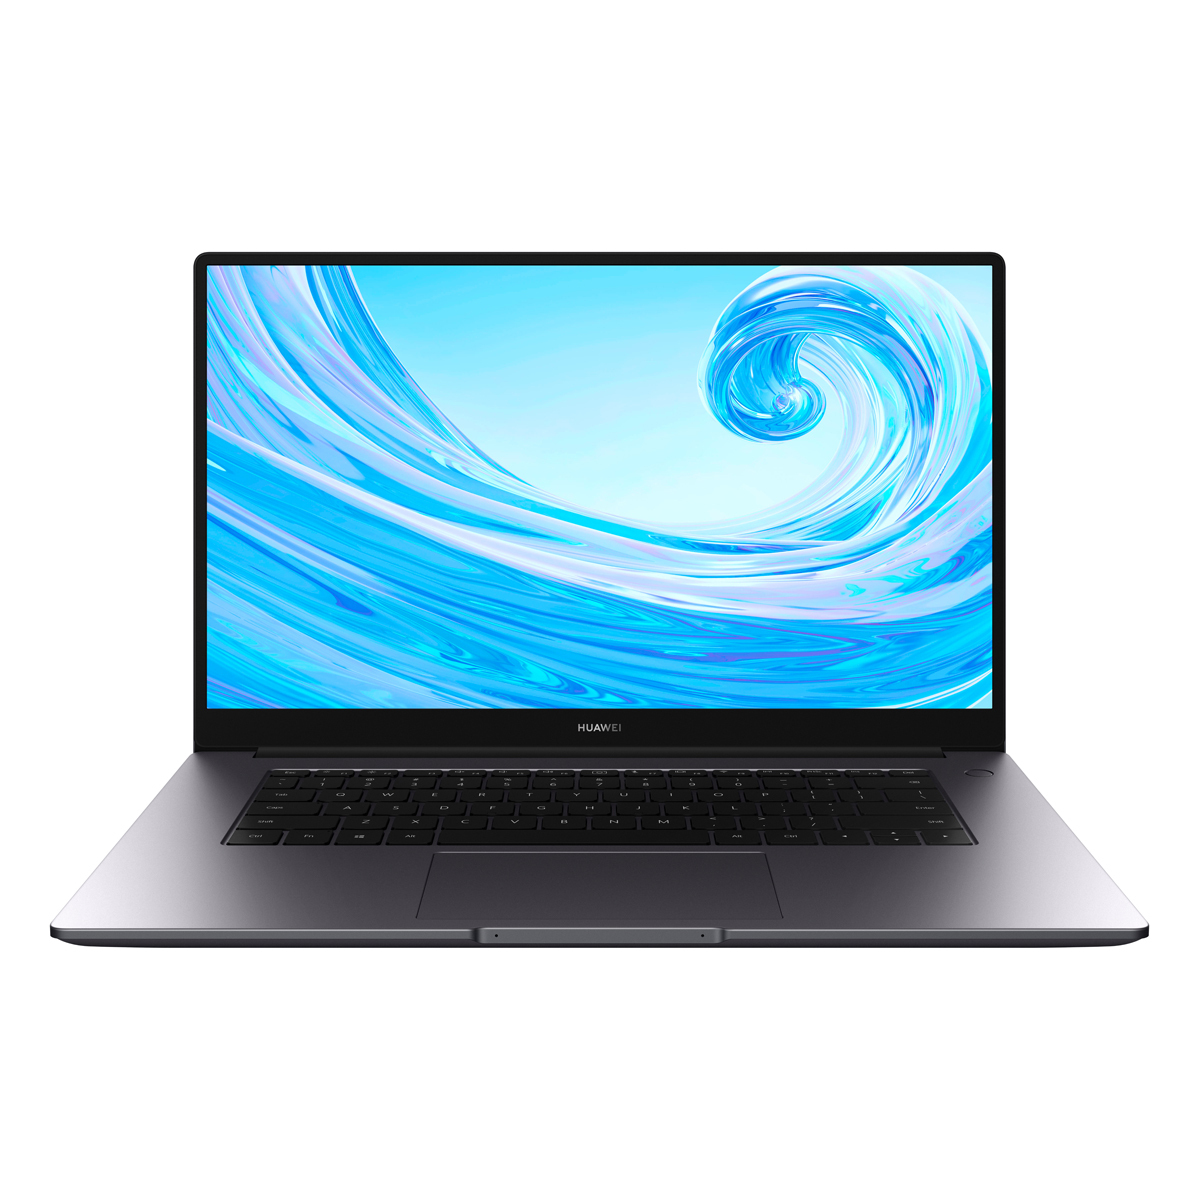 Über 80 € sparen für das HUAWEI MateBook D 15 WAH9A exklusiv mit Intel i5 39,62cm (15,6") IPS - NBB notebooksbilliger.de | Gutscheincode oder Rabatt sichern!